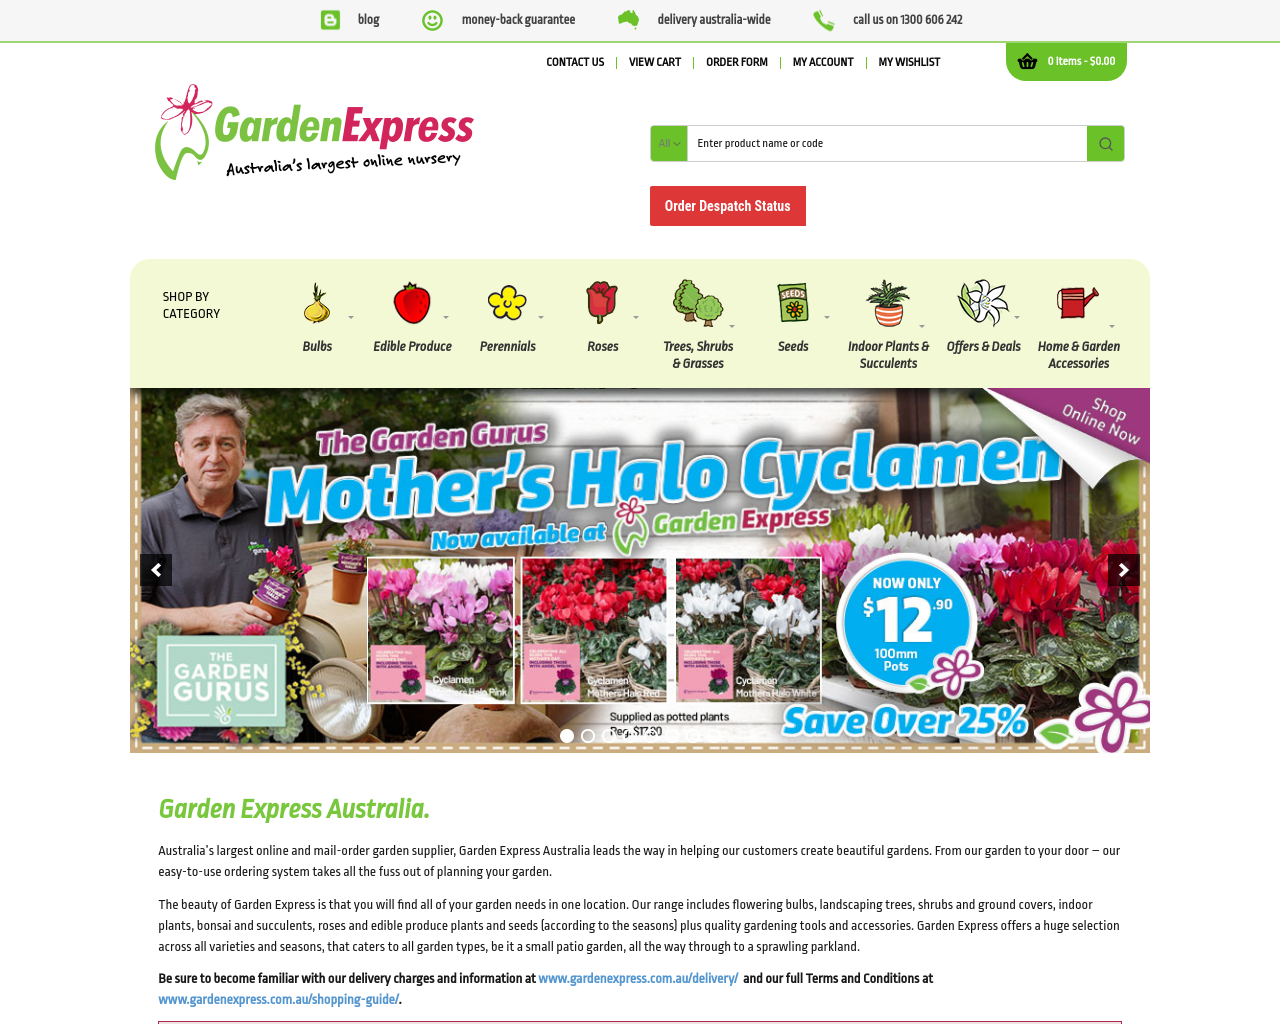 gardenexpress.com.au